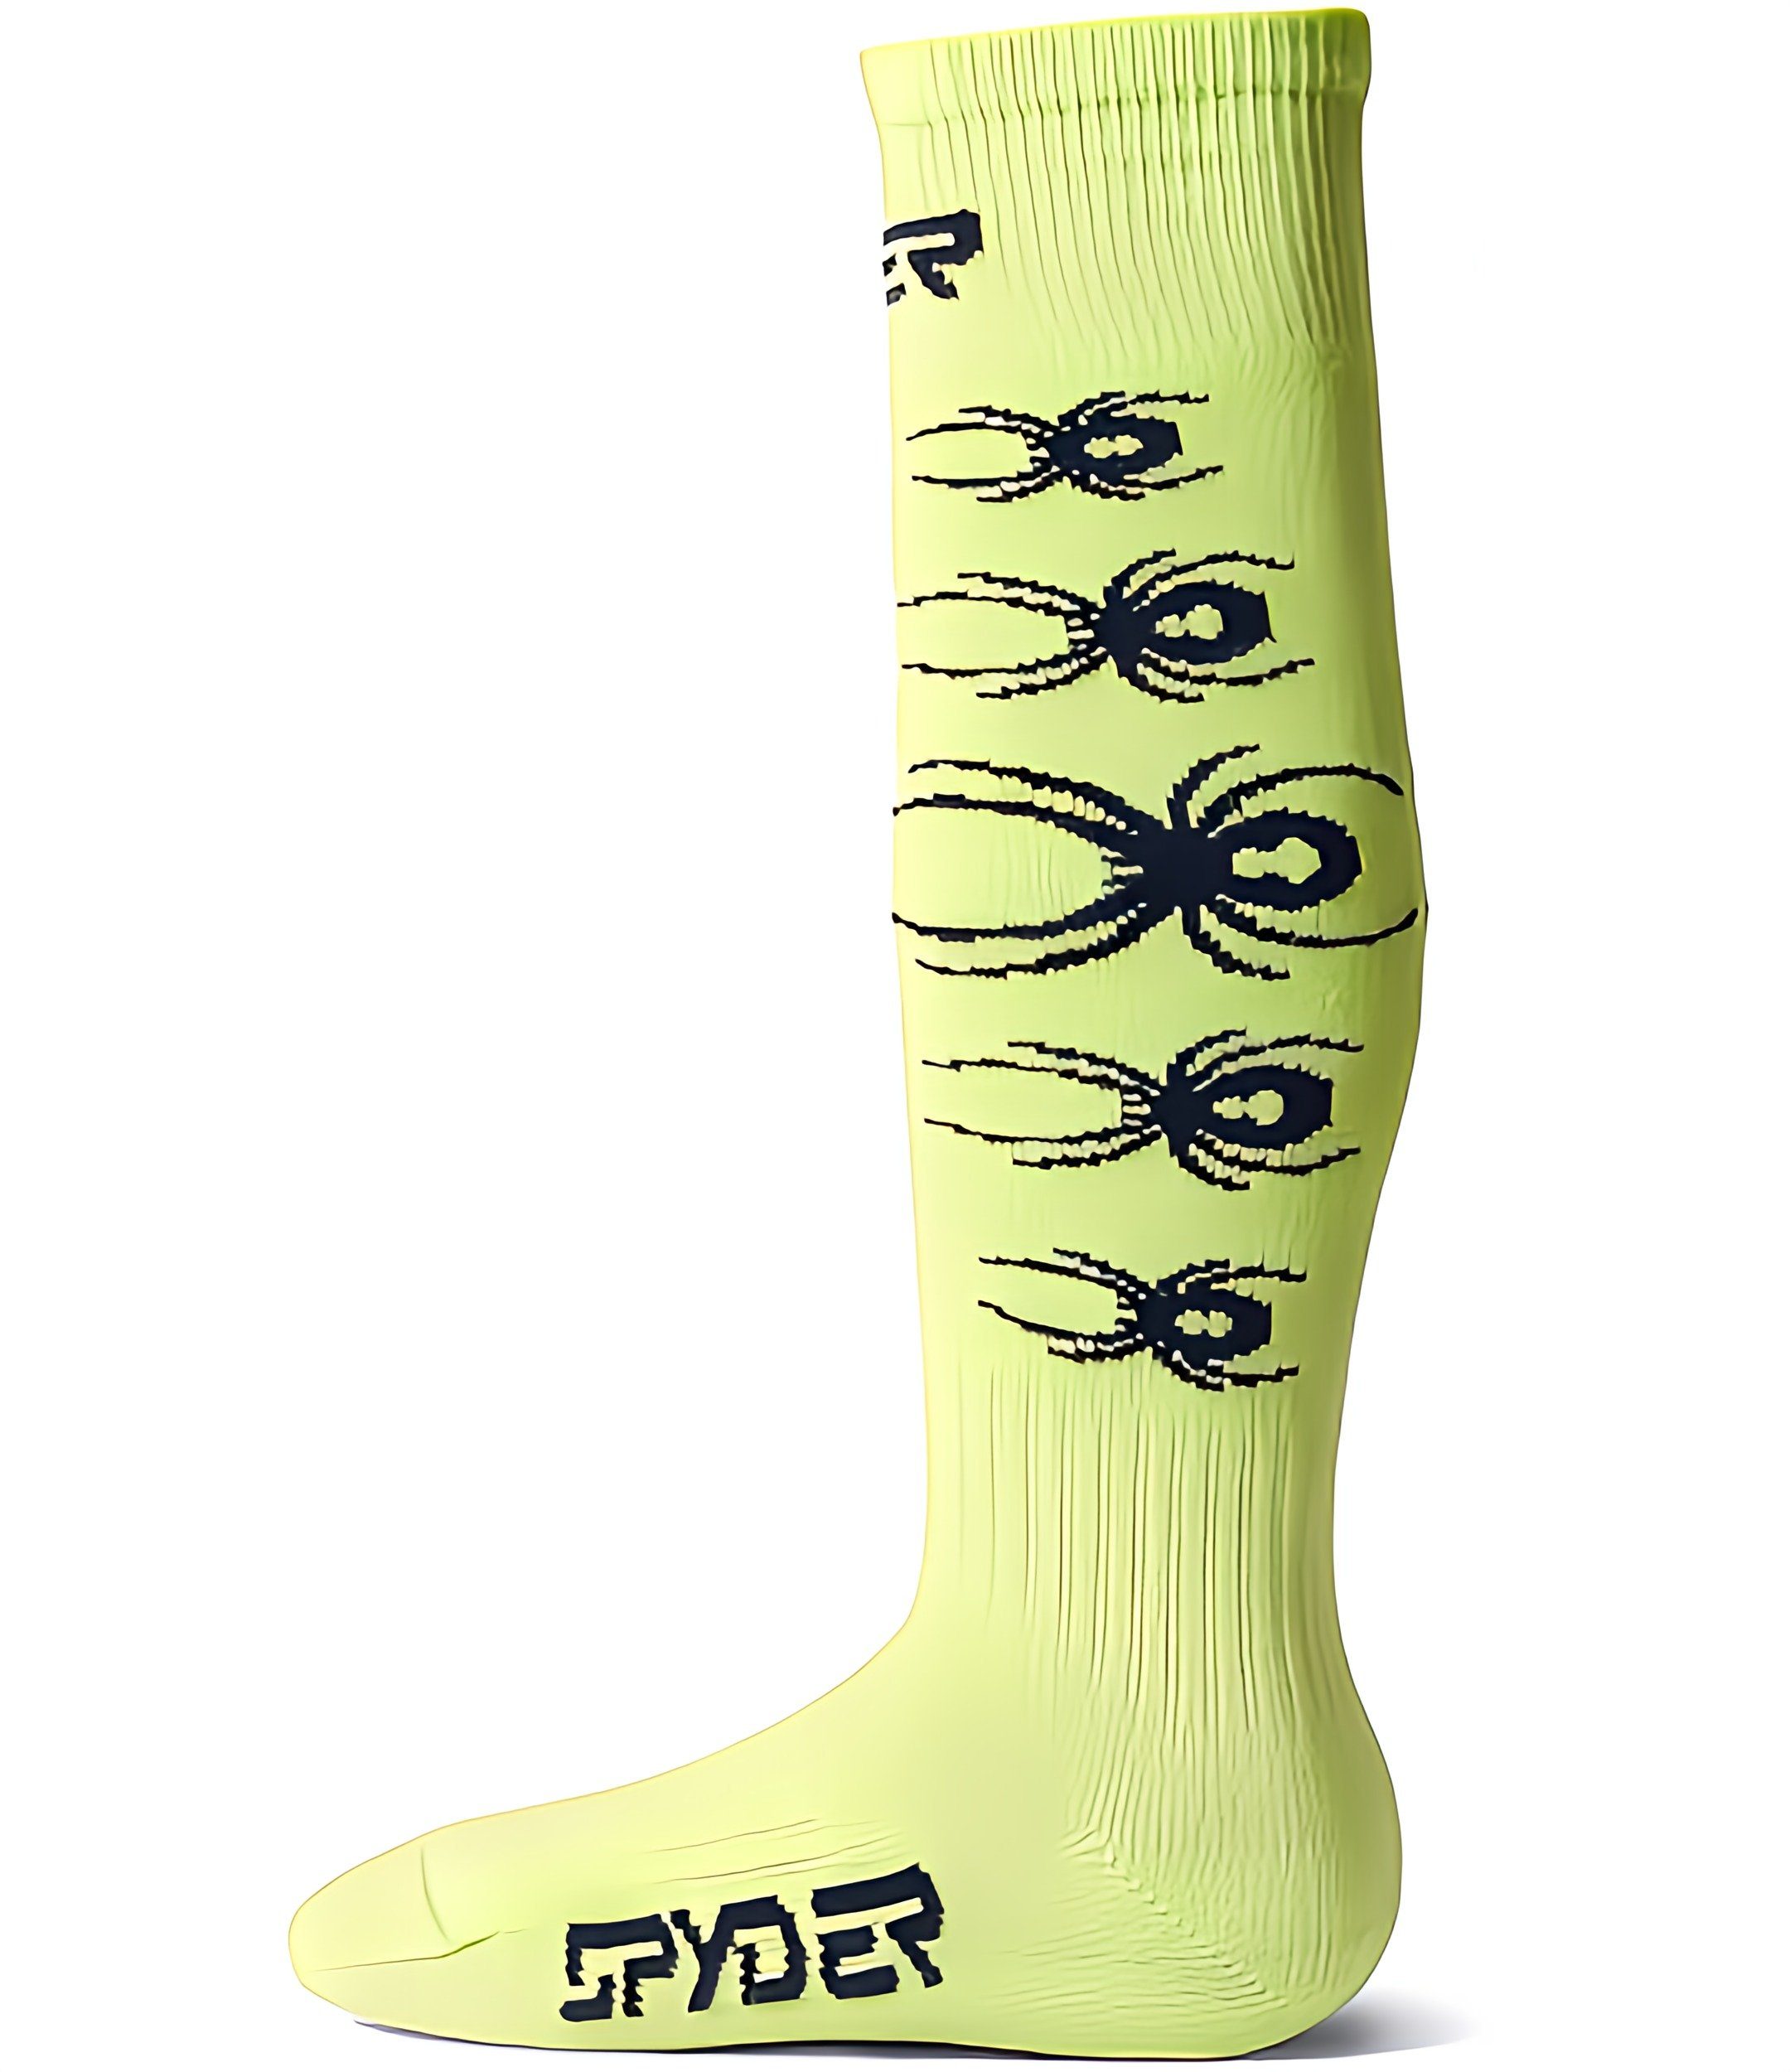 Spyder Skisocken Youth bug liner Ski Socken für Kinder lime